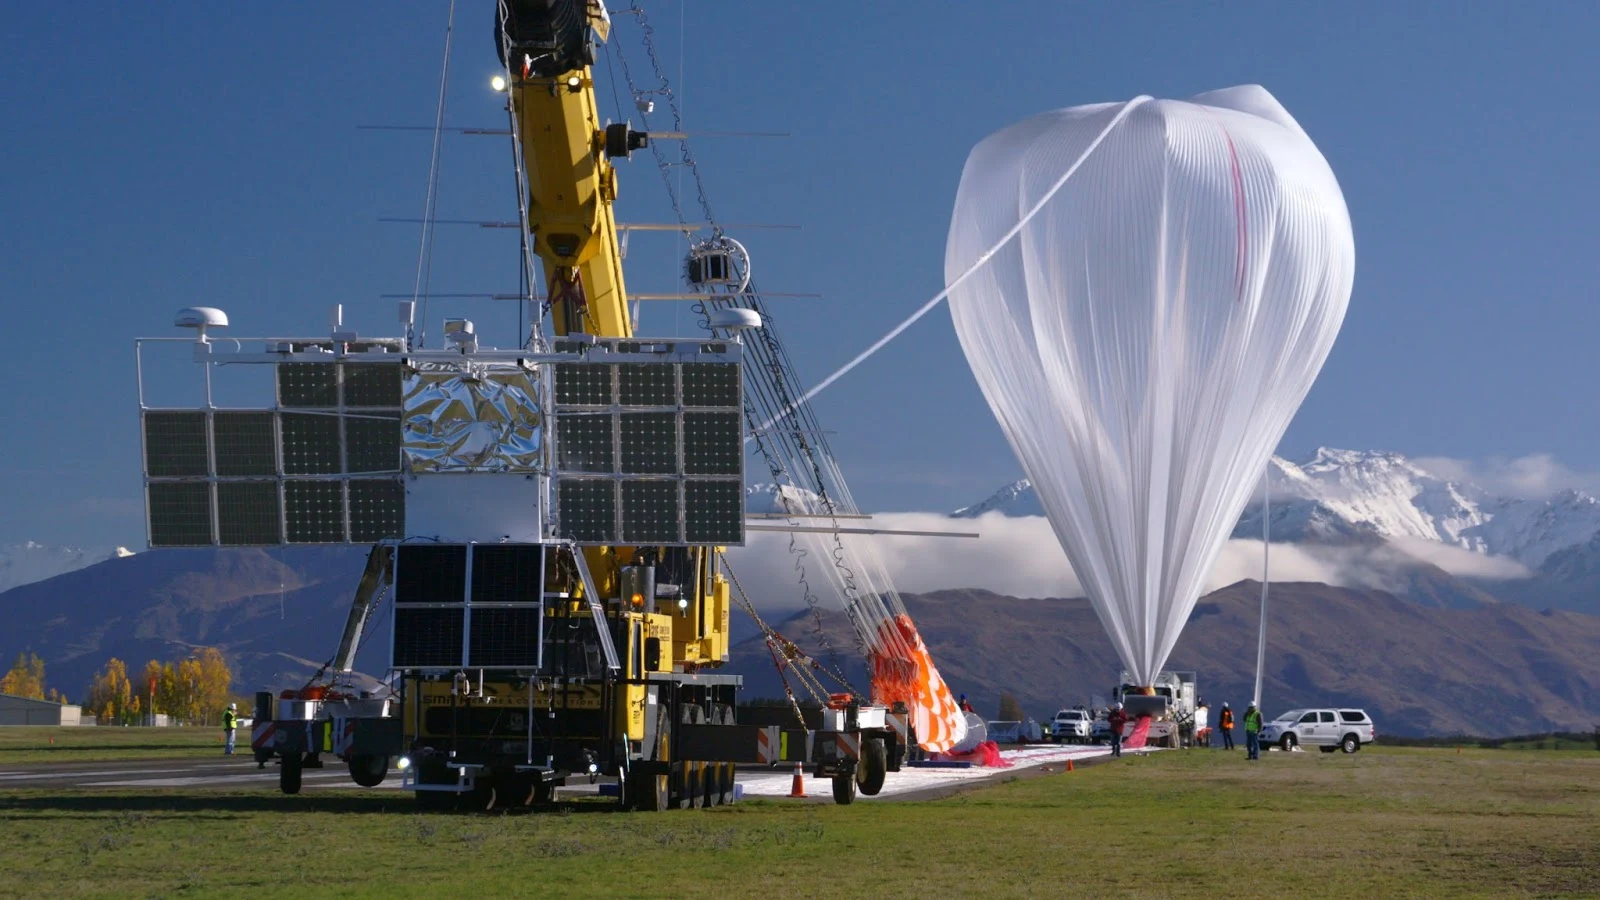 Projeto com balões da NASA semelhantes a satélites